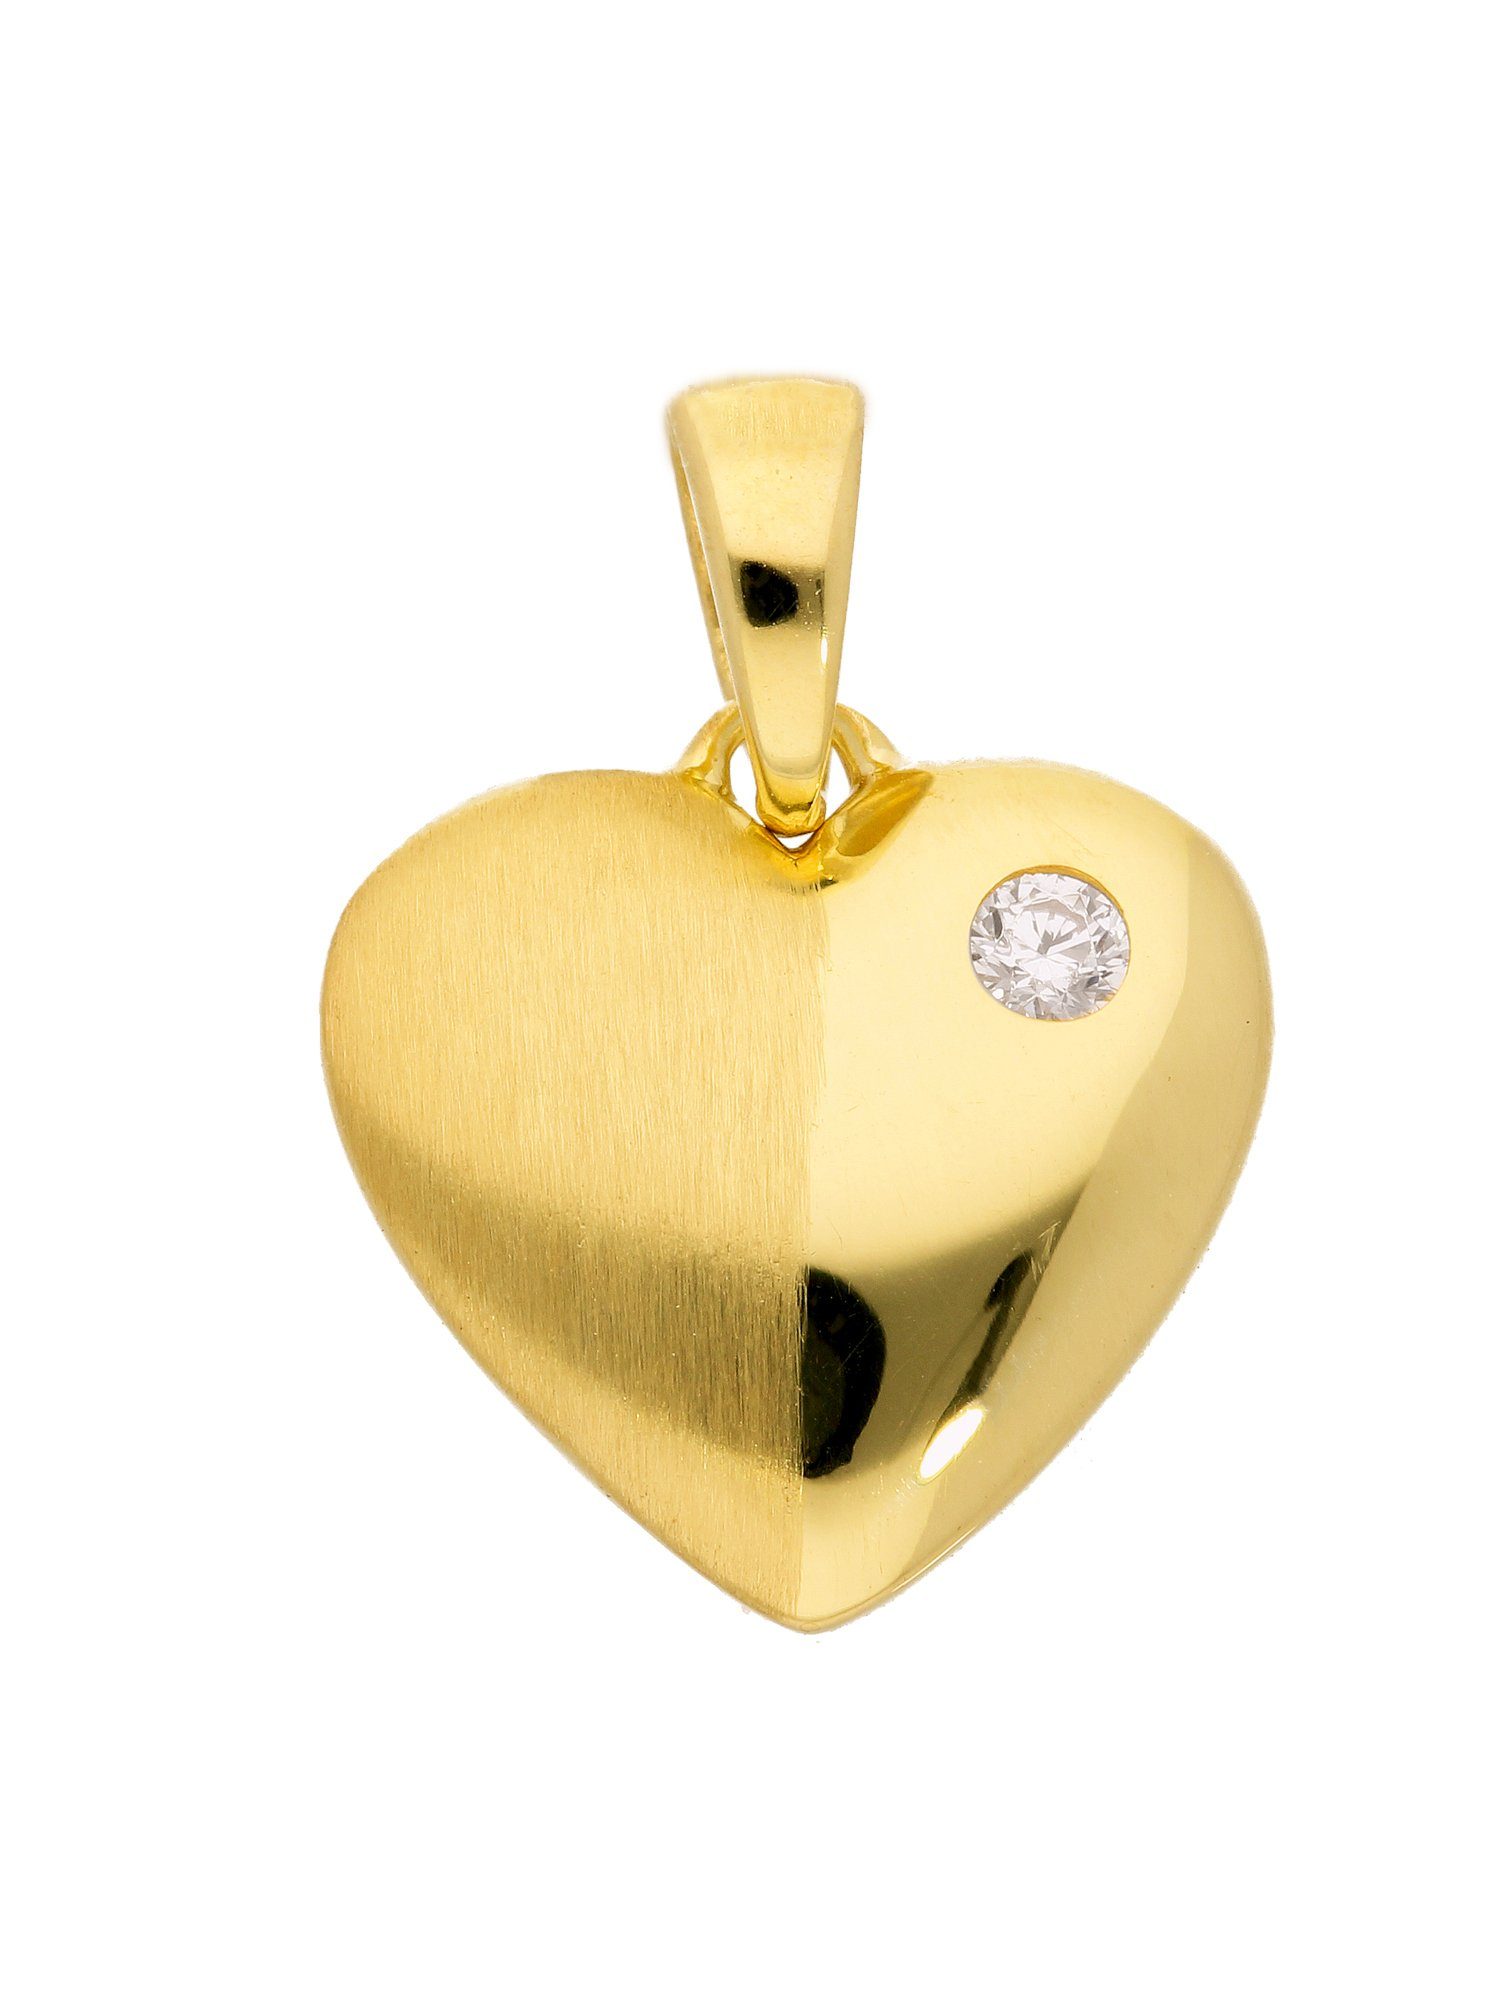 Adelia´s Kettenanhänger 333 Gold Anhänger Herz mit Zirkonia, mit Zirkonia  Goldschmuck für Damen, Maße - Breite 11 mm - Höhe 8,5 mm